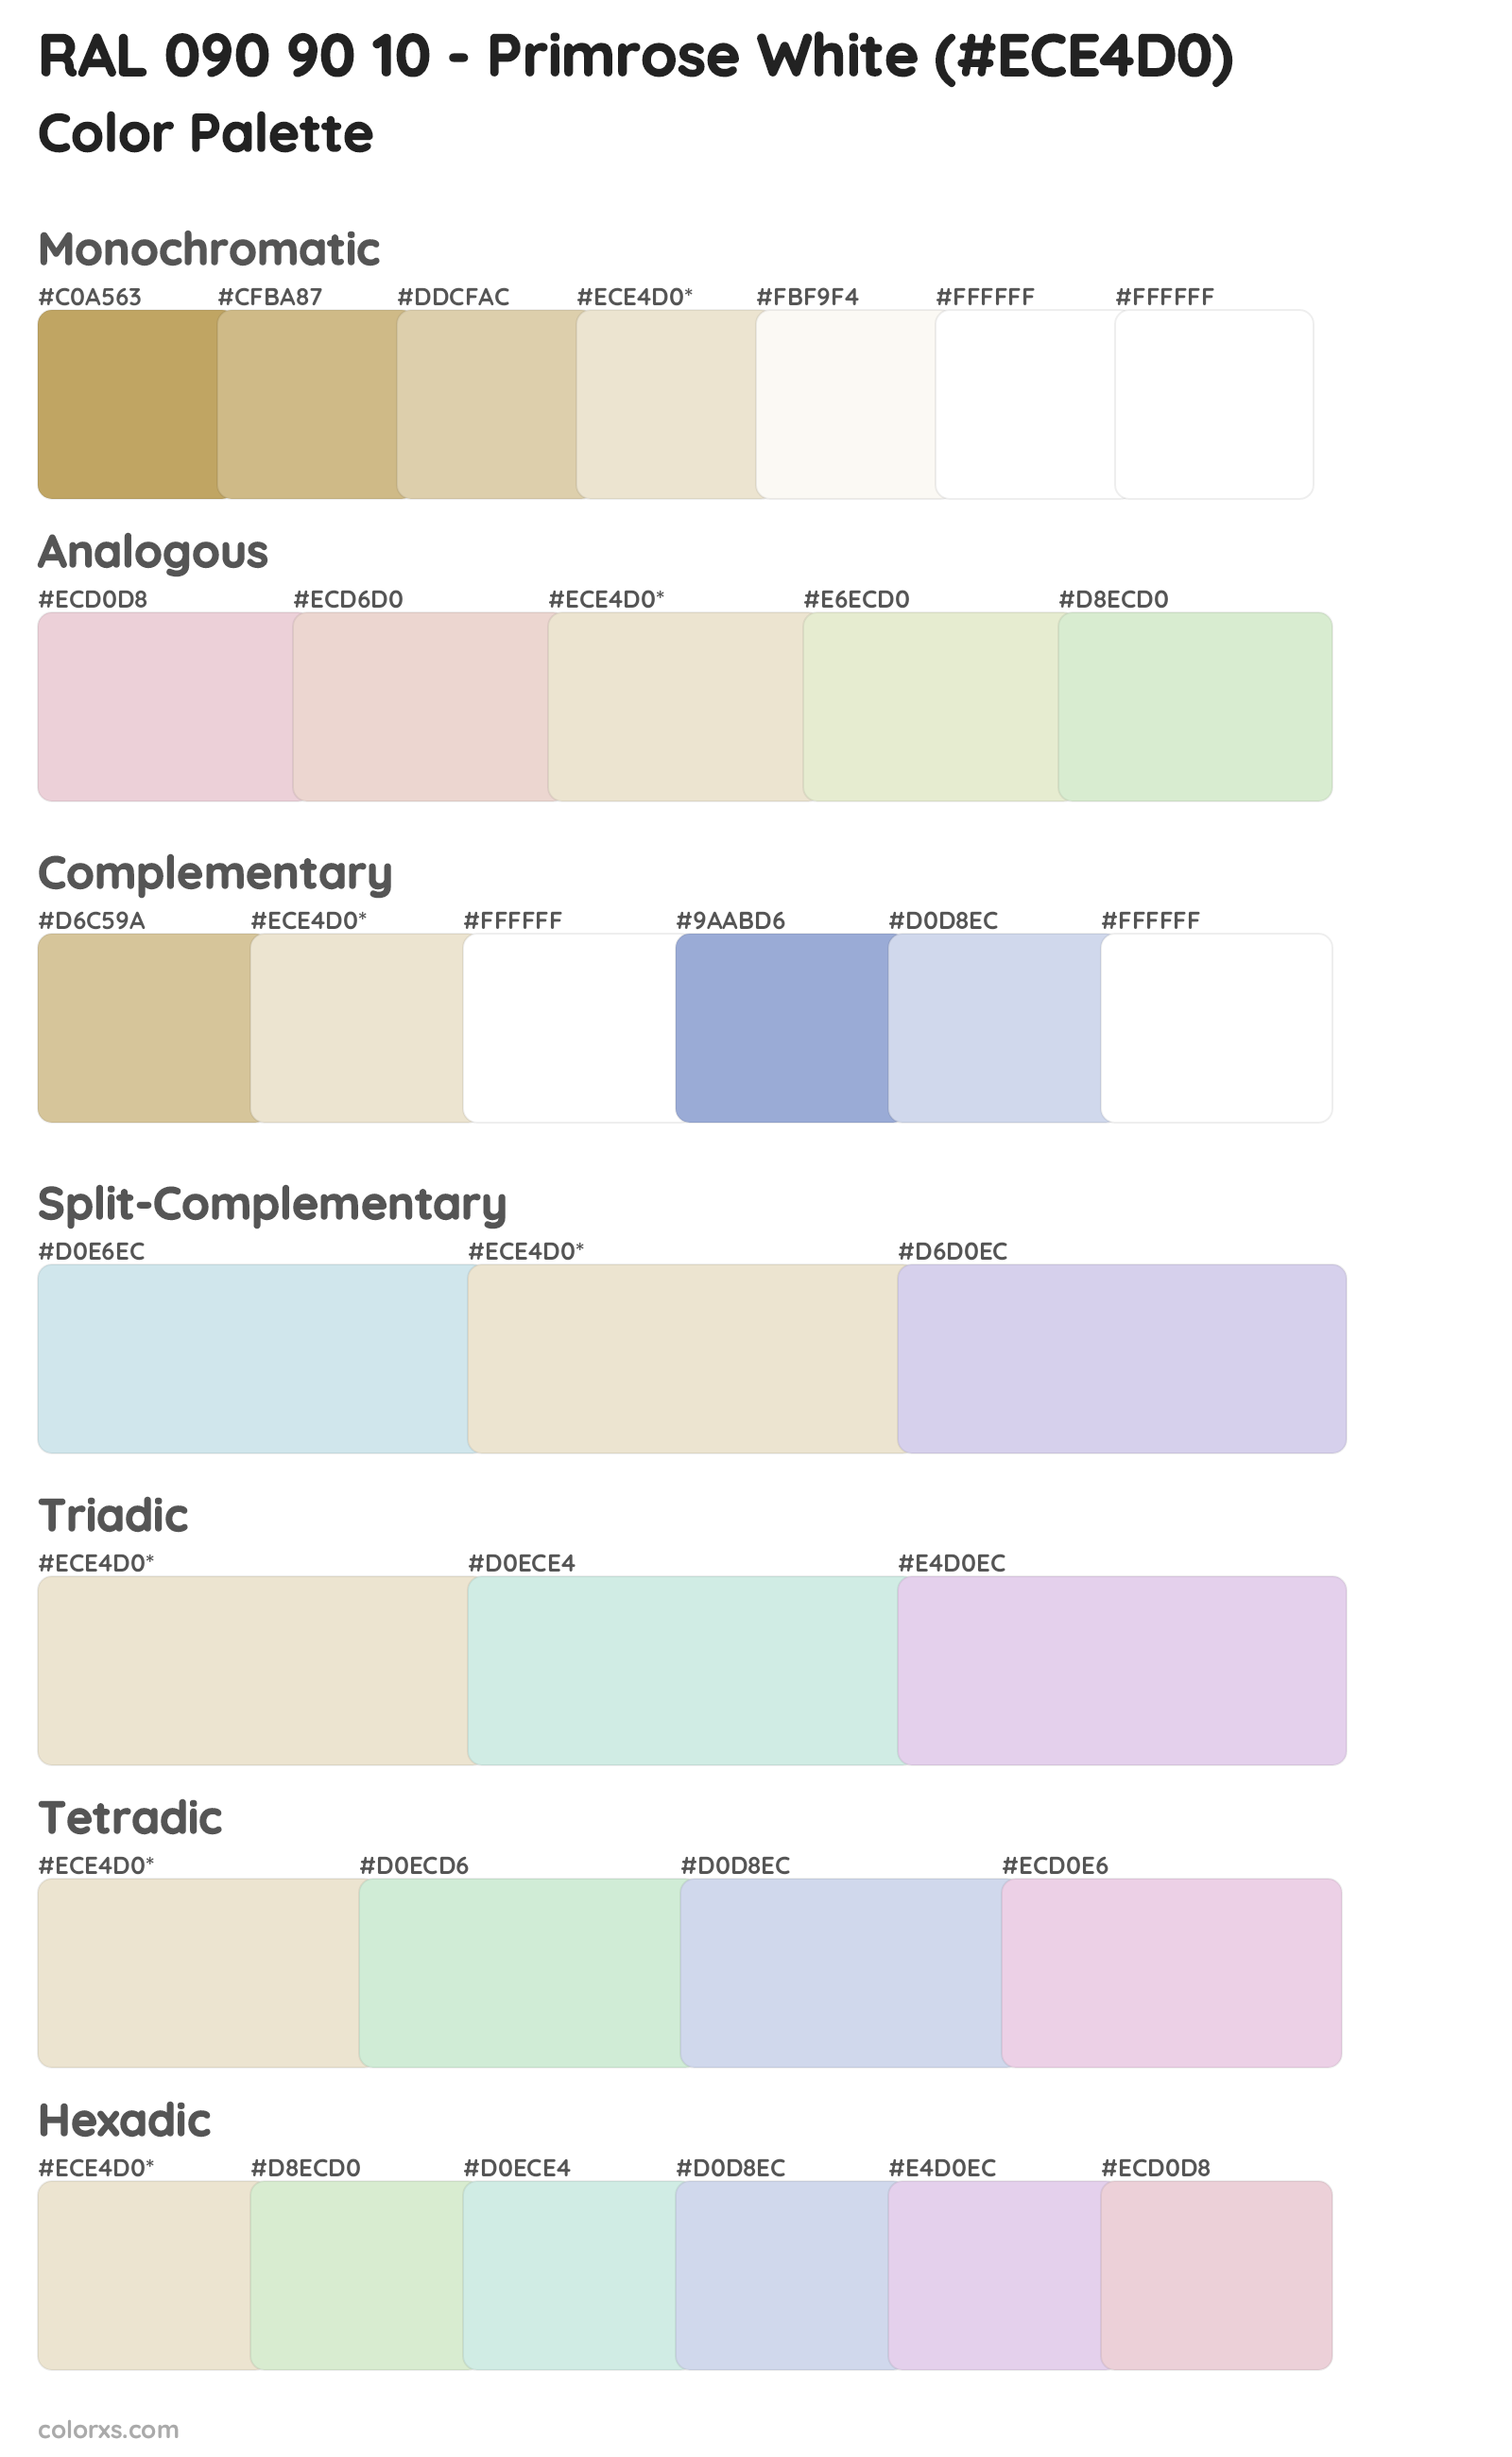 RAL 090 90 10 - Primrose White Color Scheme Palettes